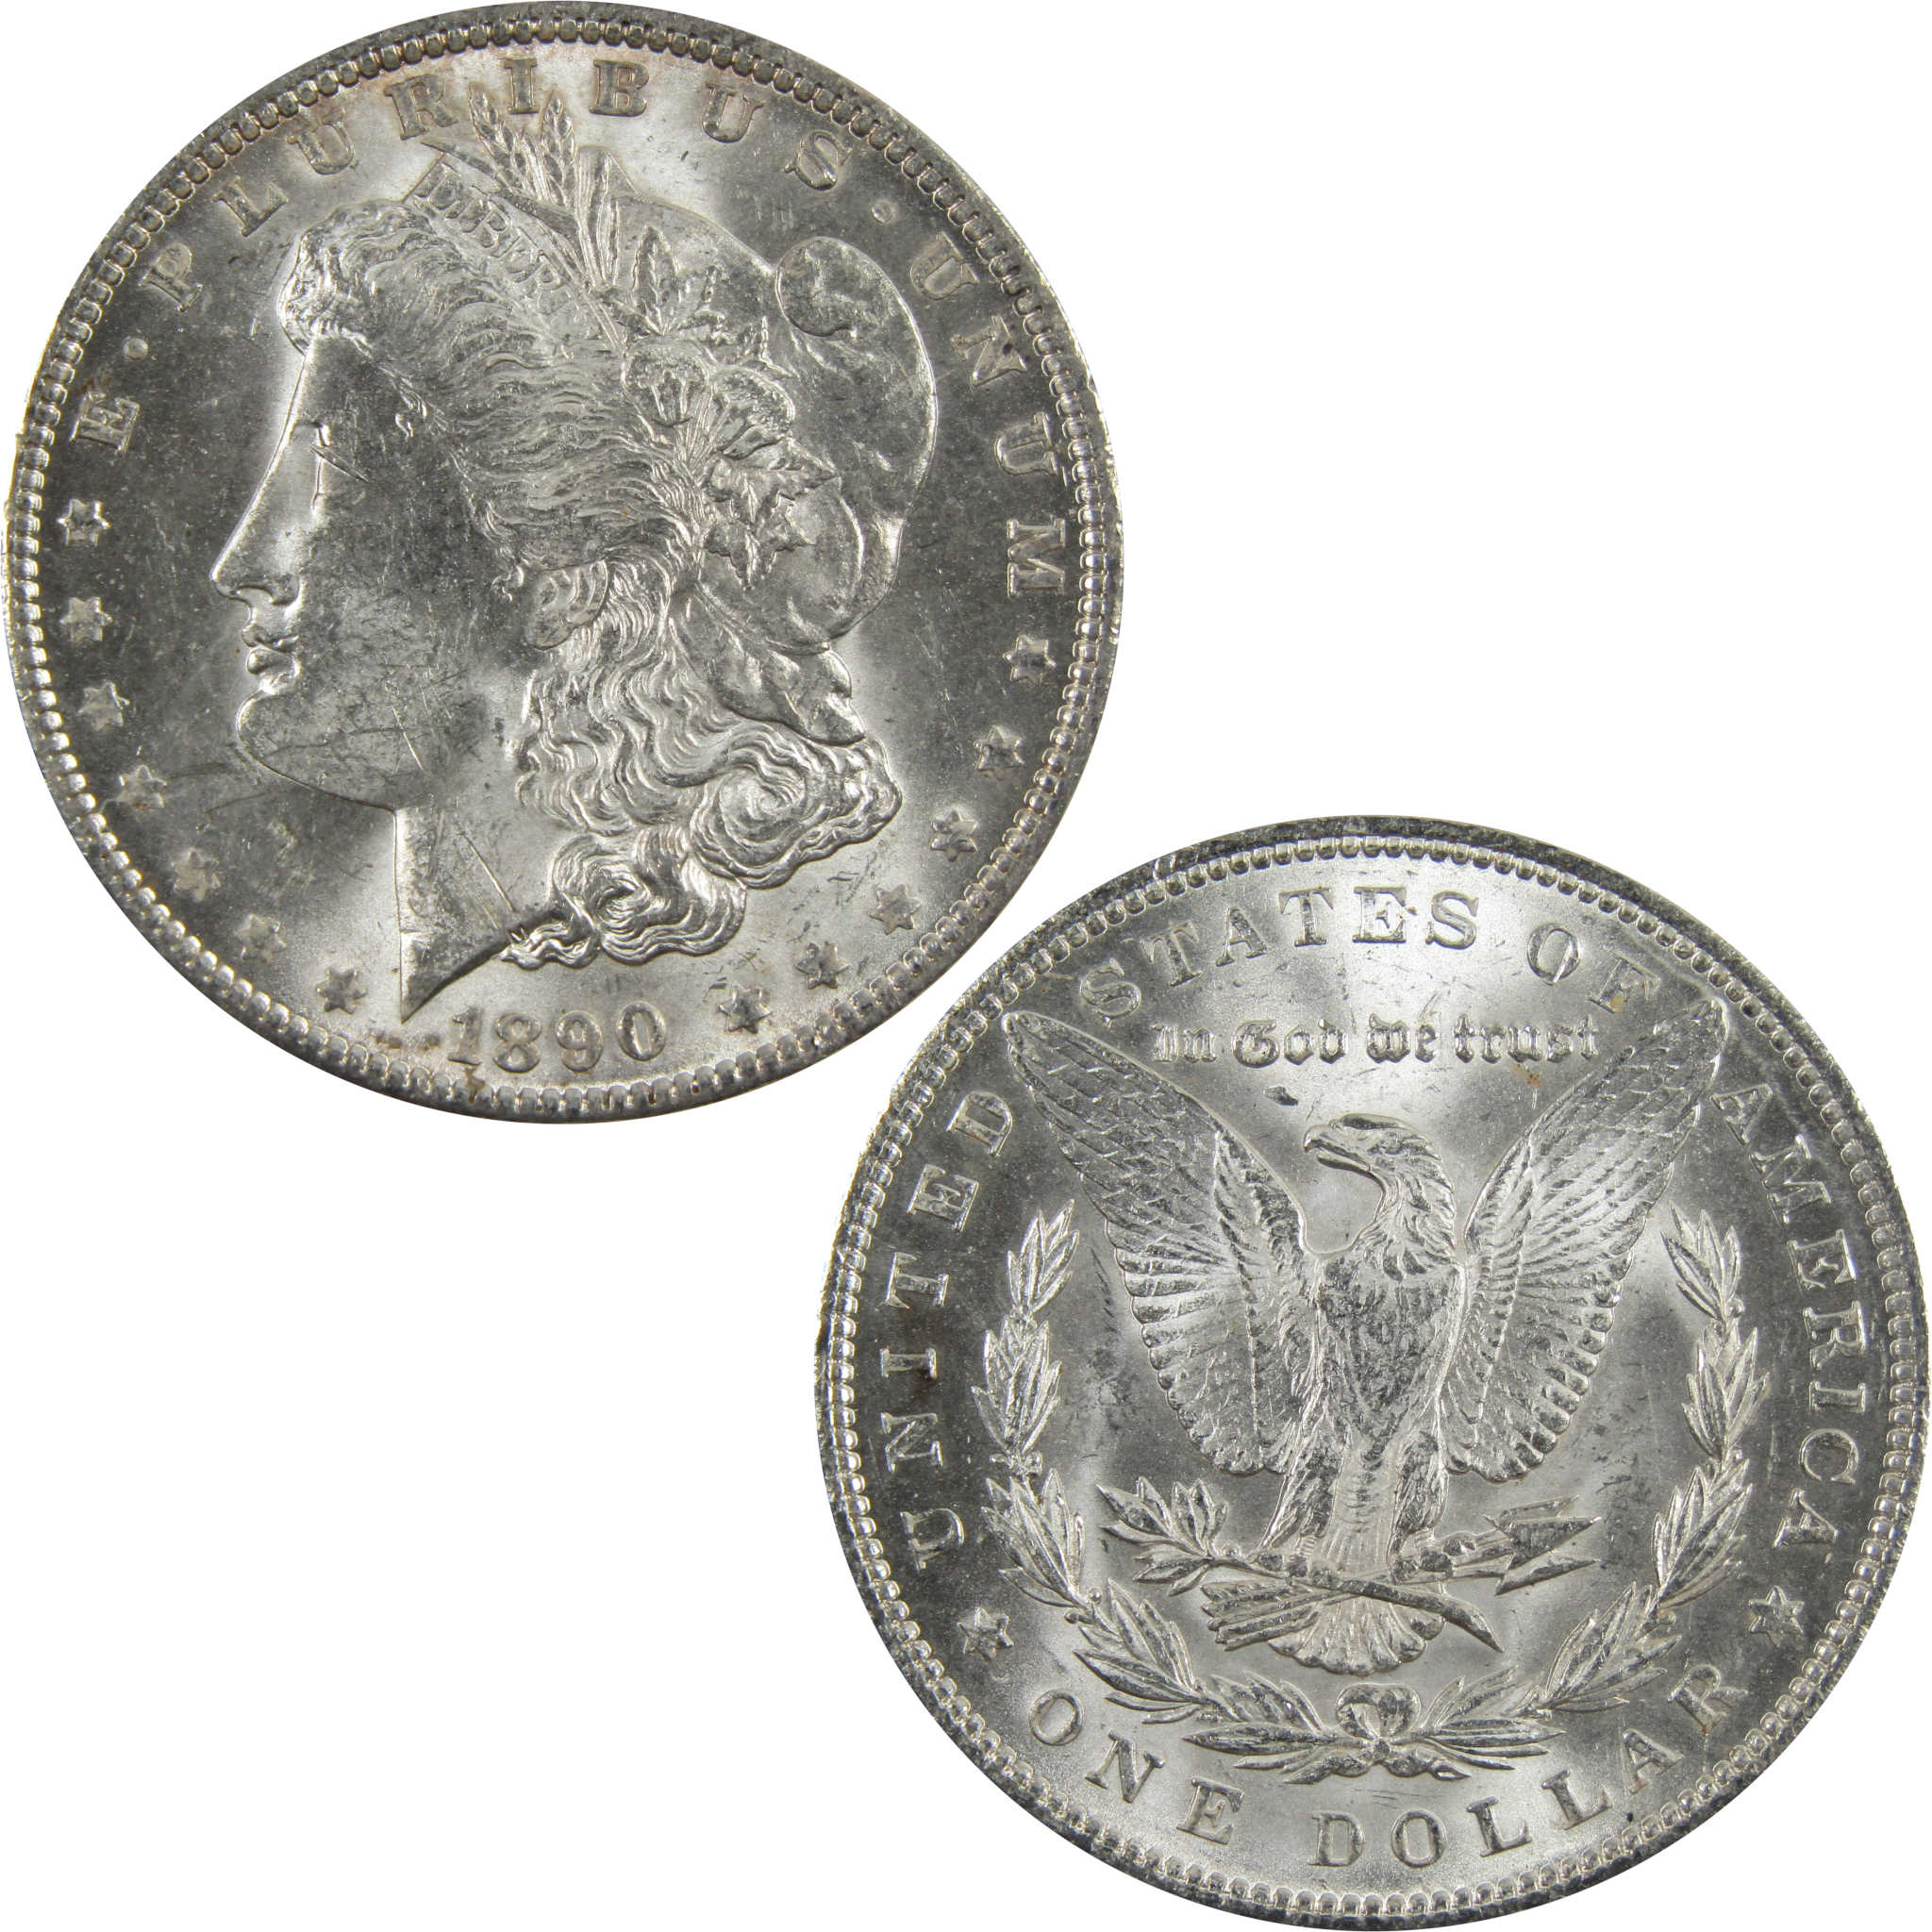 1890 Morgan Dollar BU Uncirculated 90% Silver $1 Coin SKU:I5146 - Morgan coin - Morgan silver dollar - Morgan silver dollar for sale - Profile Coins &amp; Collectibles